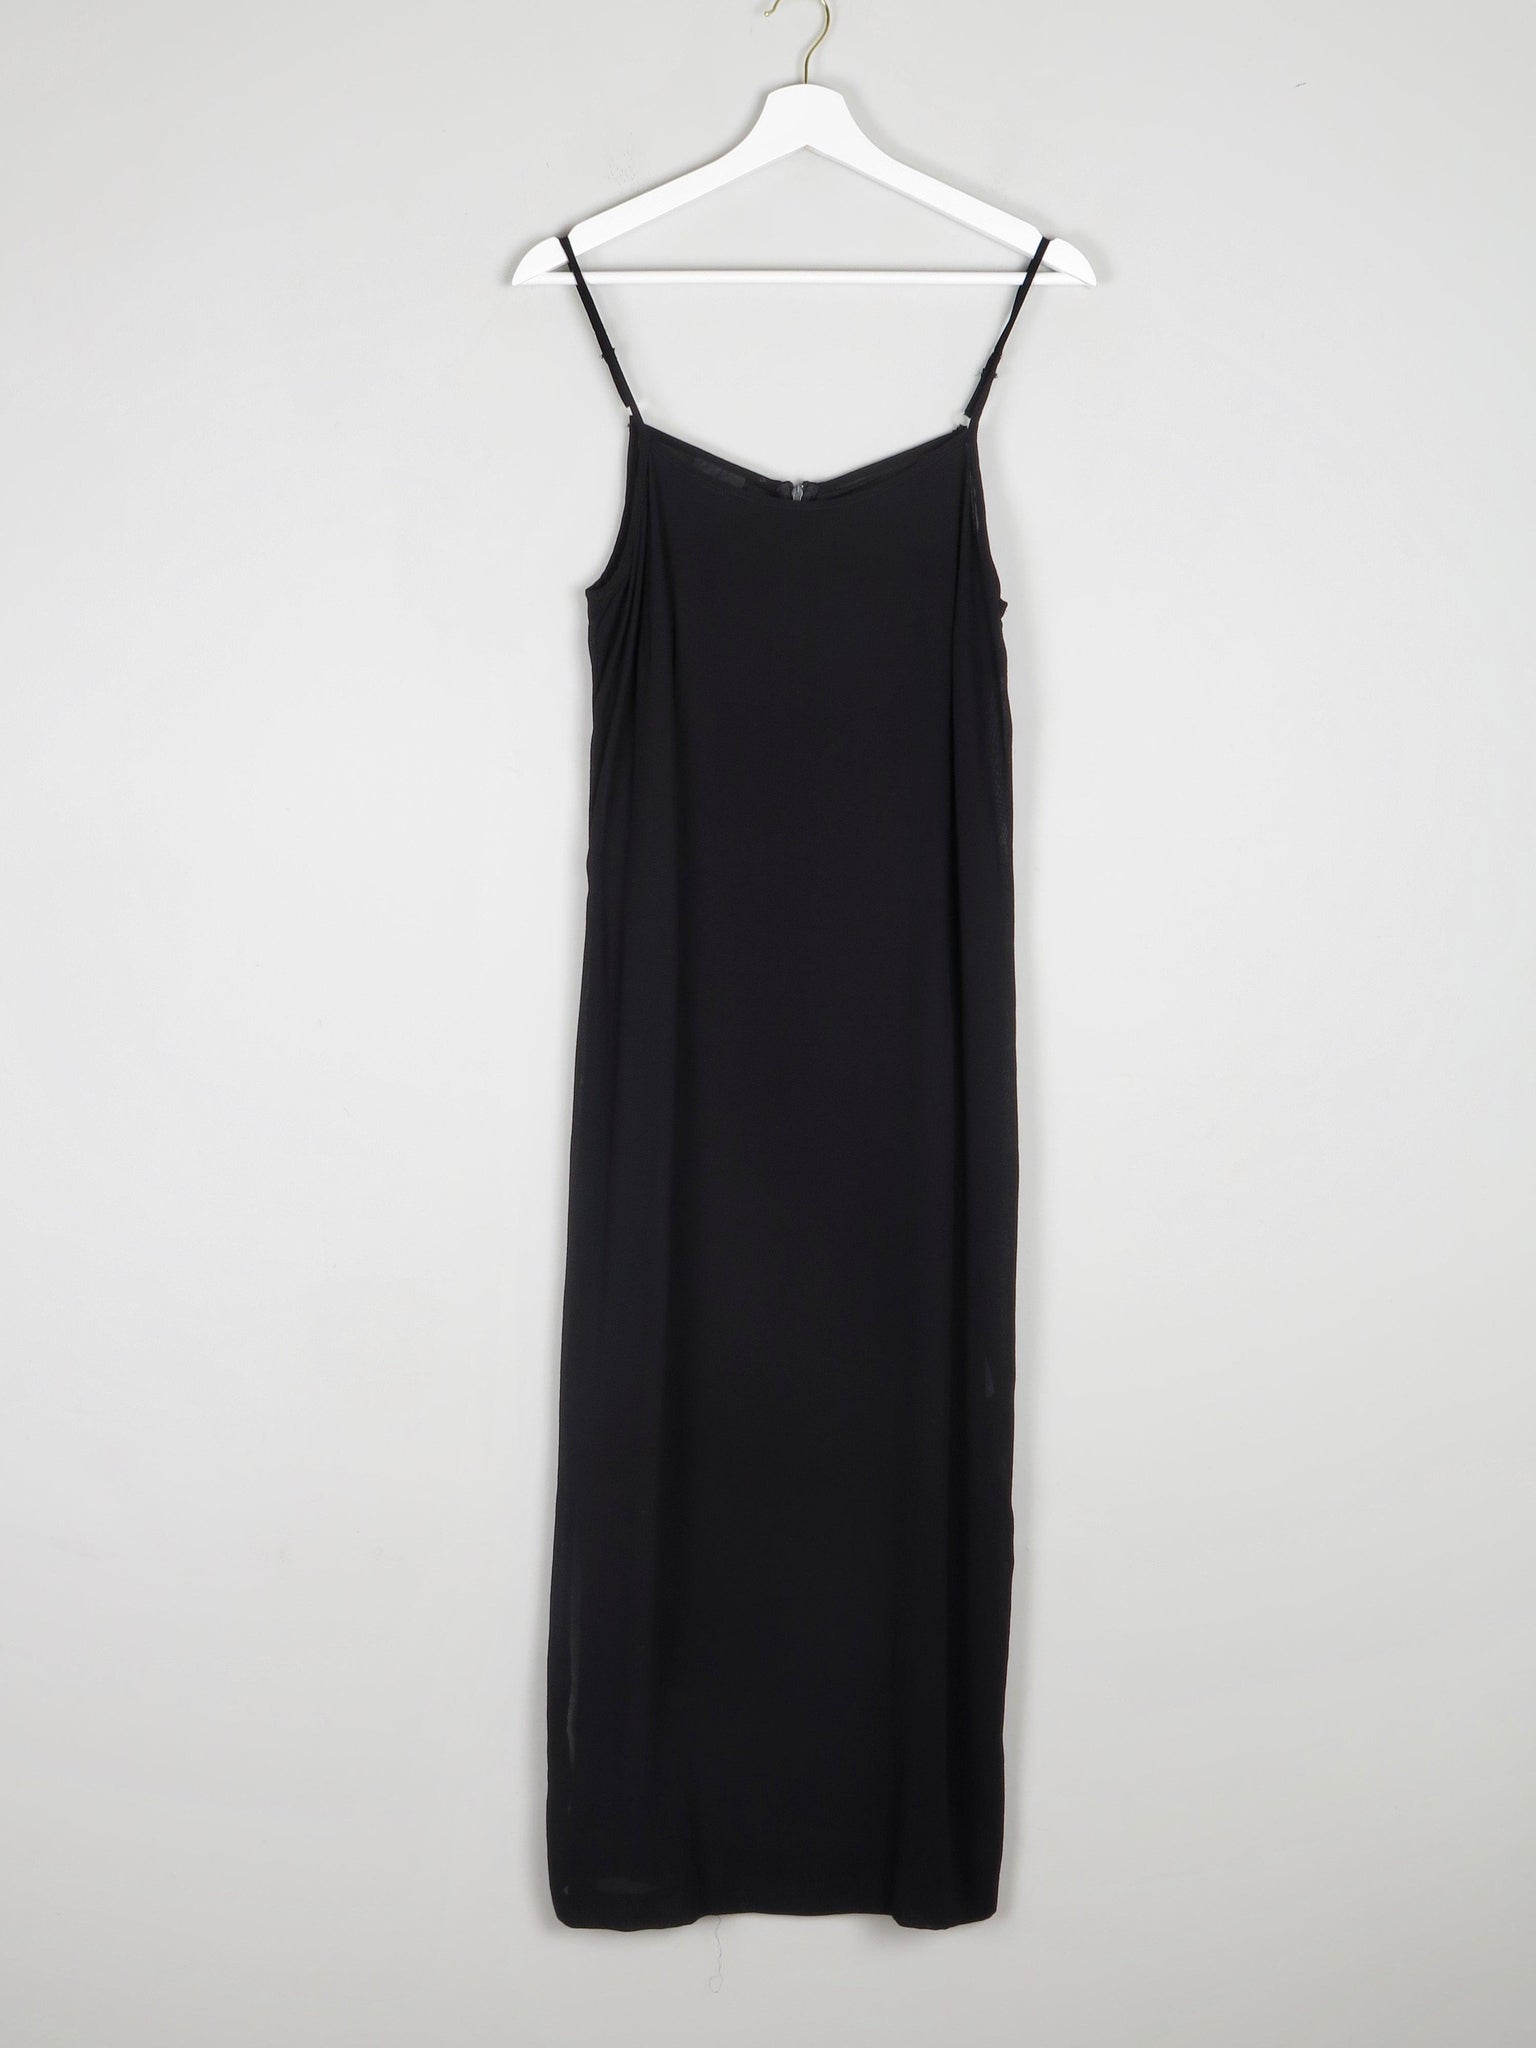 Black Vintage 90s Long Camisole Dress M - The Harlequin